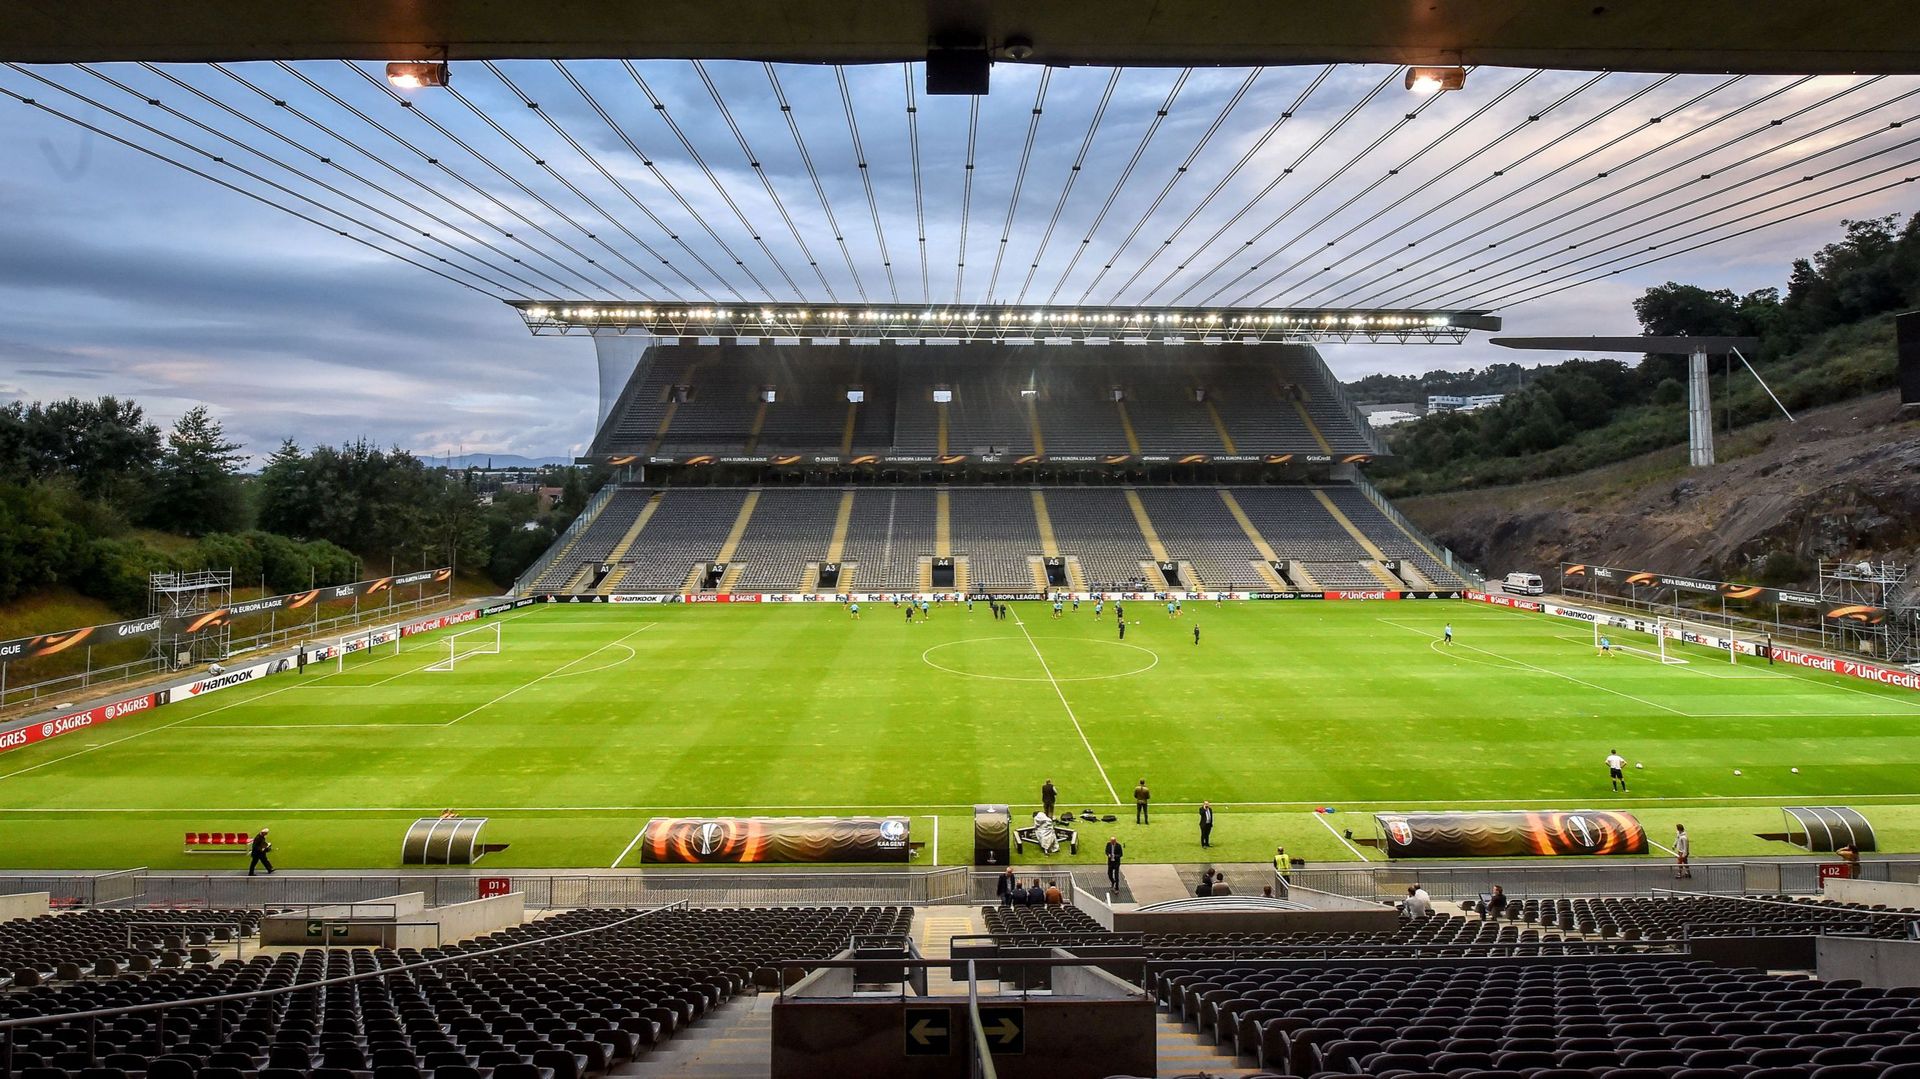 Sur la pelouse de l'Estadio Axa de Braga, les joueurs de... Gand, adversaire de Braga en poules d'Europa League en 2016, s'échauffent.